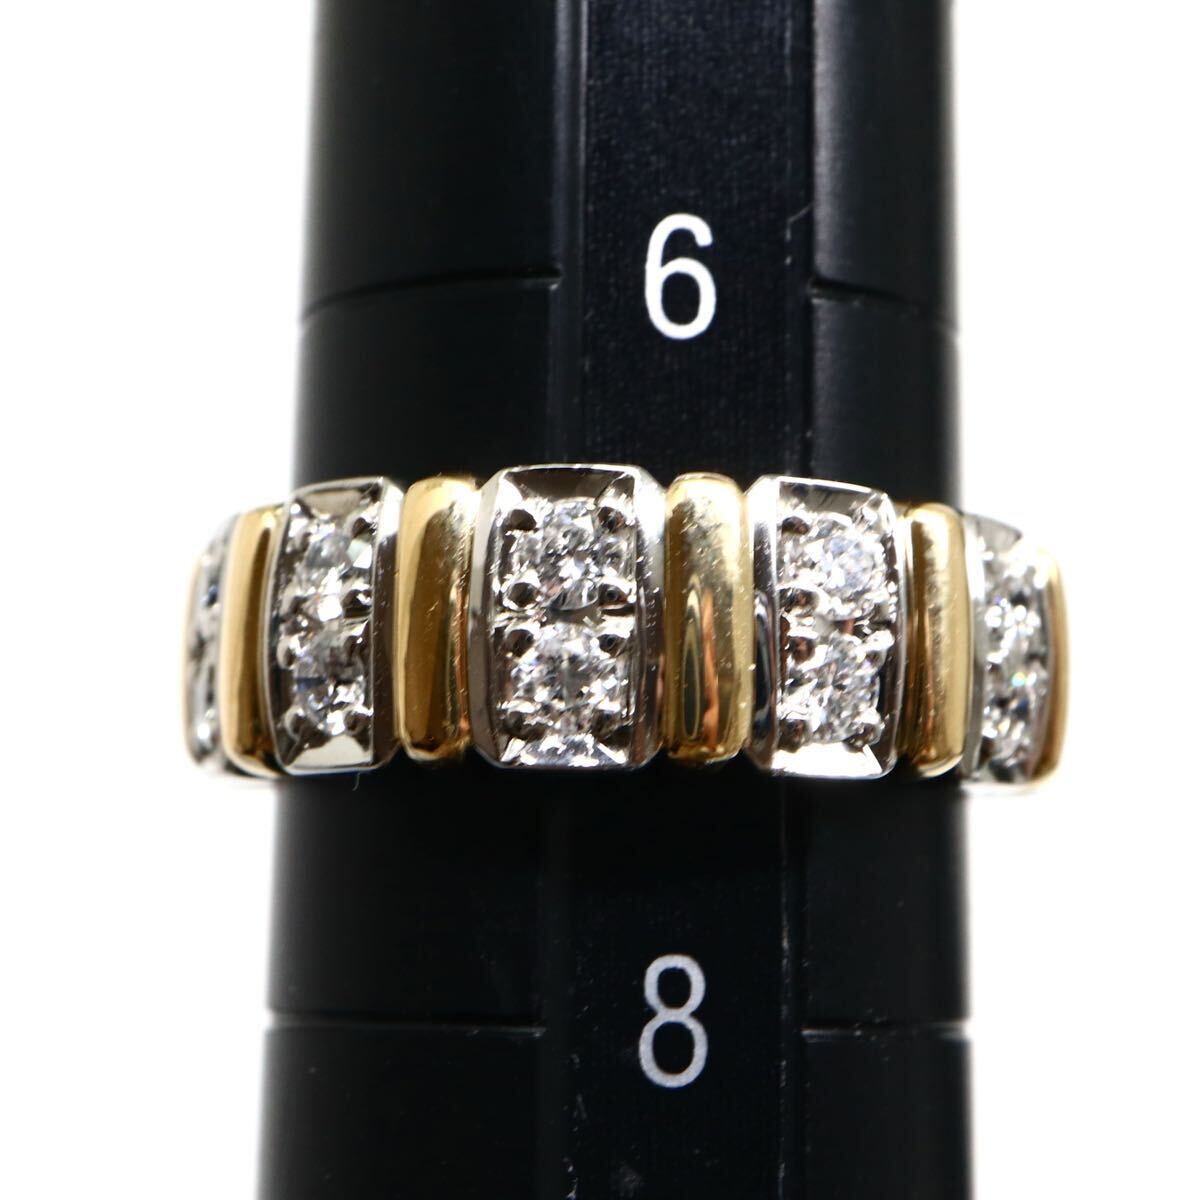 Ambrose(アンブローズ)《K18/Pt900 天然ダイヤモンドリング》M 約6.9g 約7号 0.31ct diamond ring jewelry 指輪 ジュエリー ED0/ED5_画像9